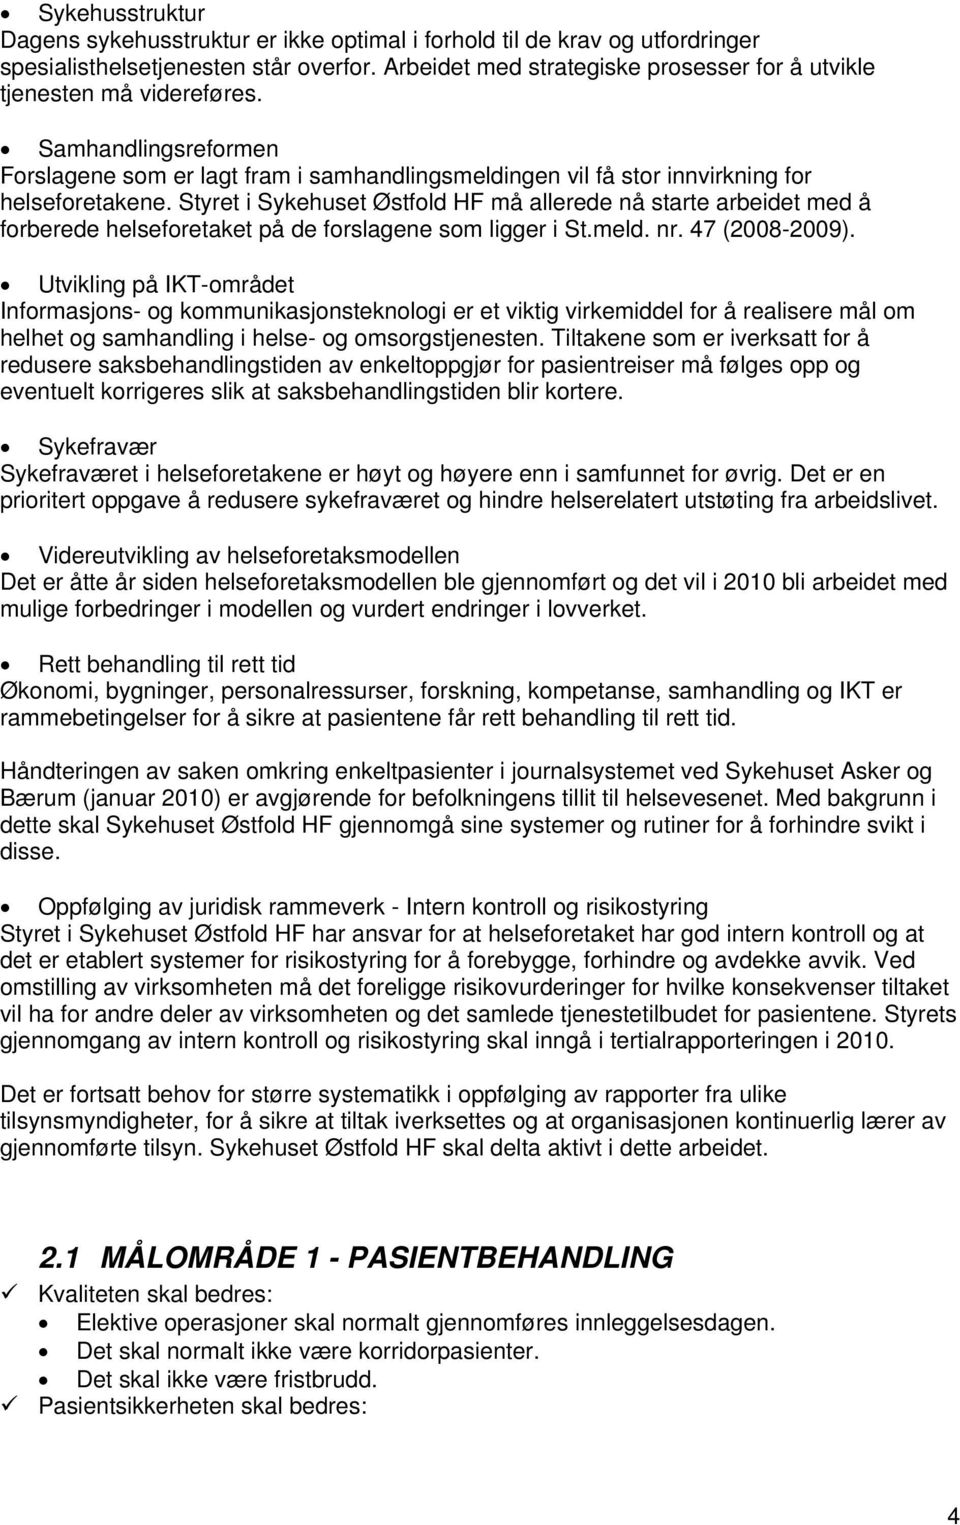 Styret i Sykehuset Østfold HF må allerede nå starte arbeidet med å forberede helseforetaket på de forslagene som ligger i St.meld. nr. 47 (2008-2009).